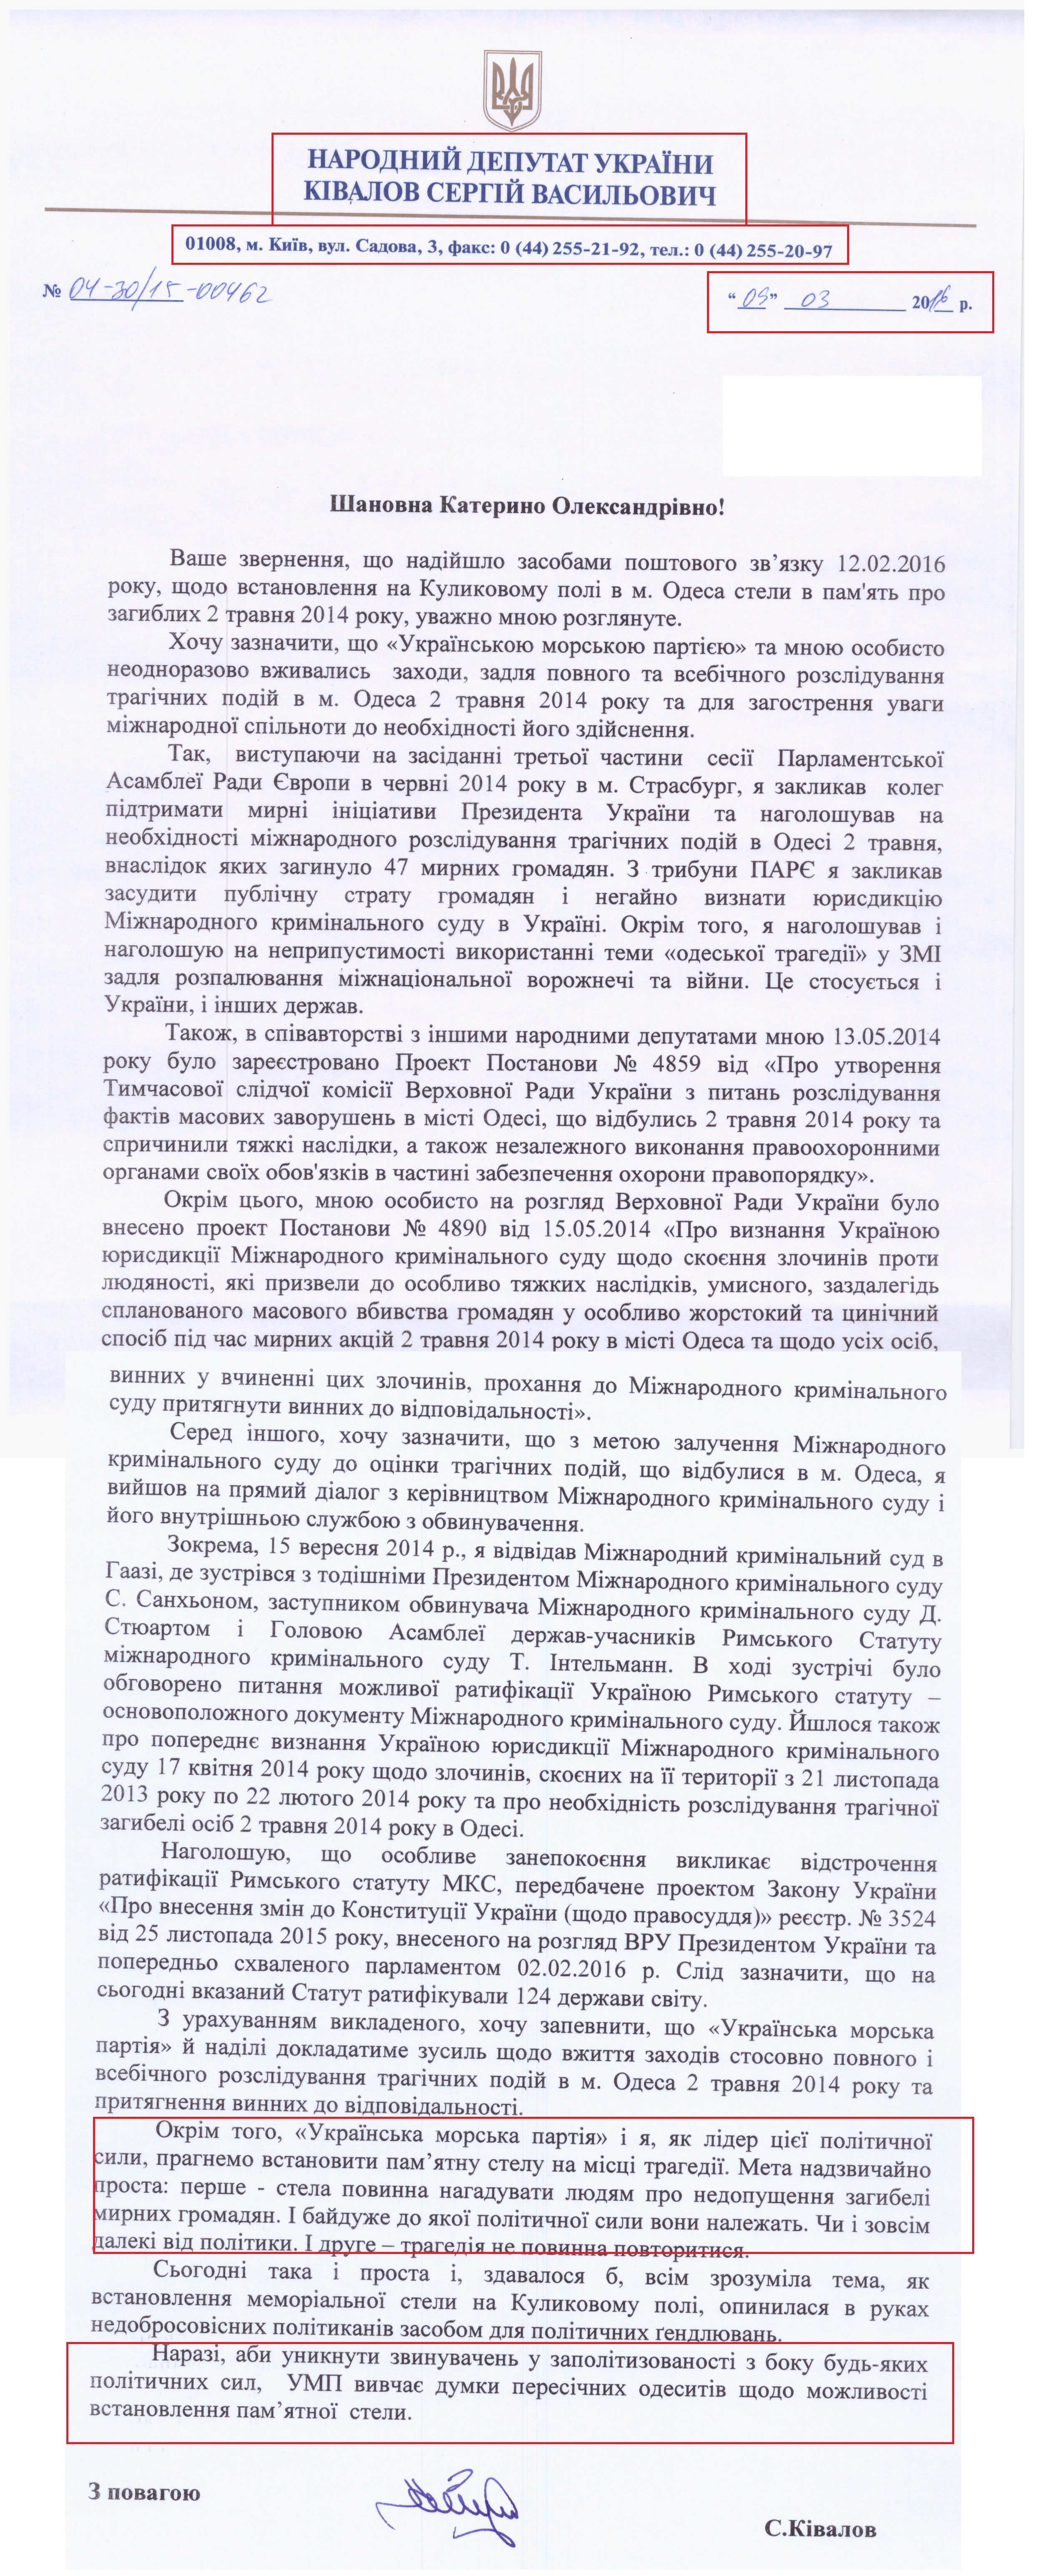 Лист народного депутата Ківалова Сергія